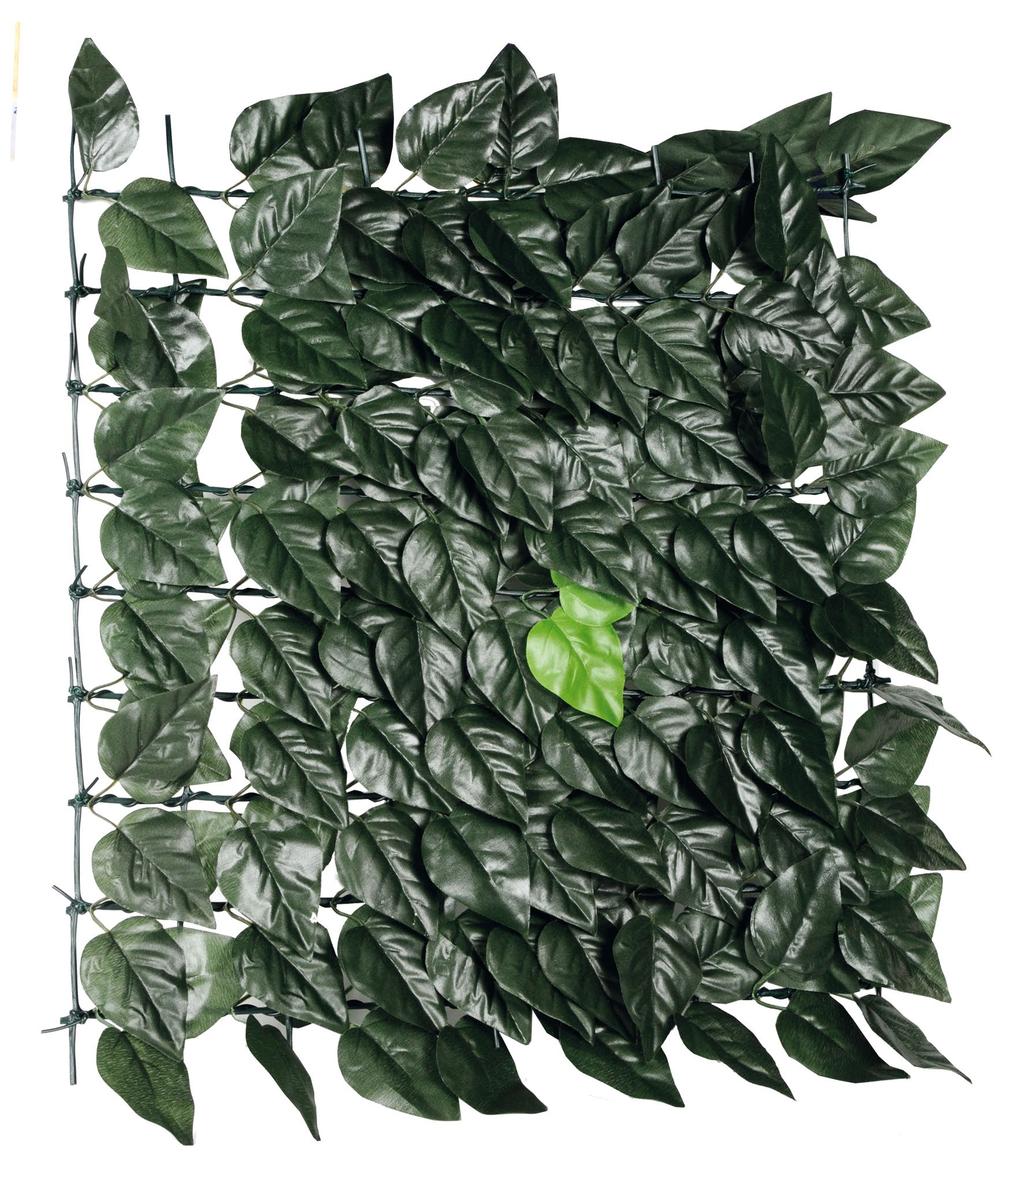 Protección total integrado para: hojas de lauro en tela de plástico, col. verde oscuro apoyado por una red de malla cuadrada de plástico.